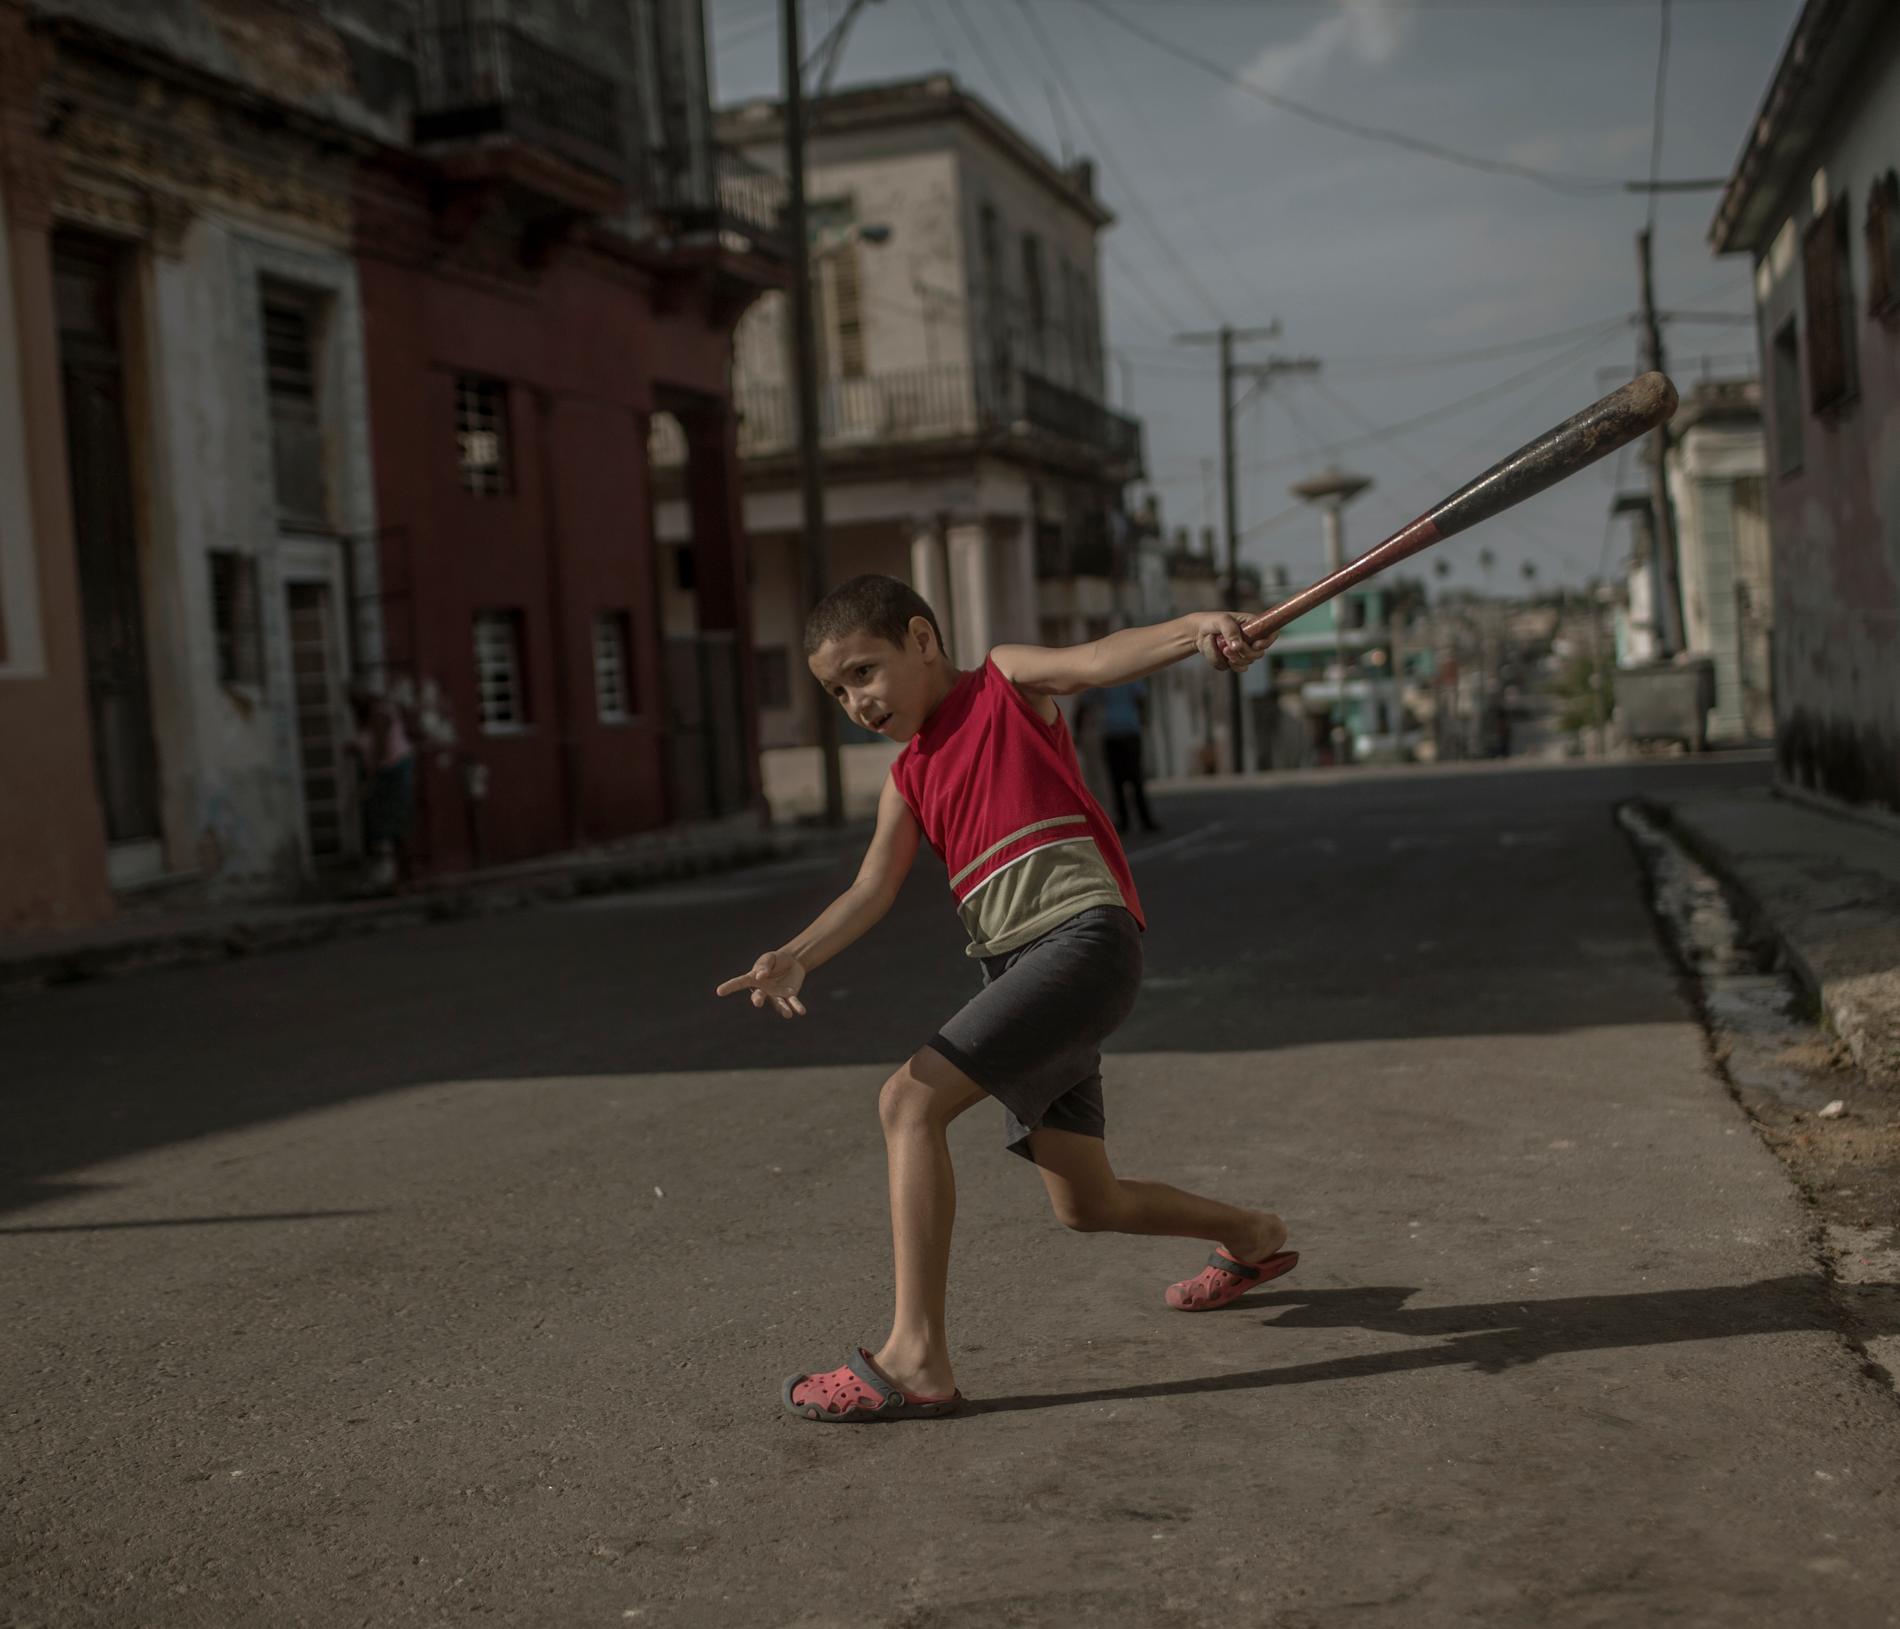 Årets fotograf 2017, Magnus Wennman. Diego, 6 bor i utkanten av Havanna och drömmer om att en dag bli baseballproffs. 